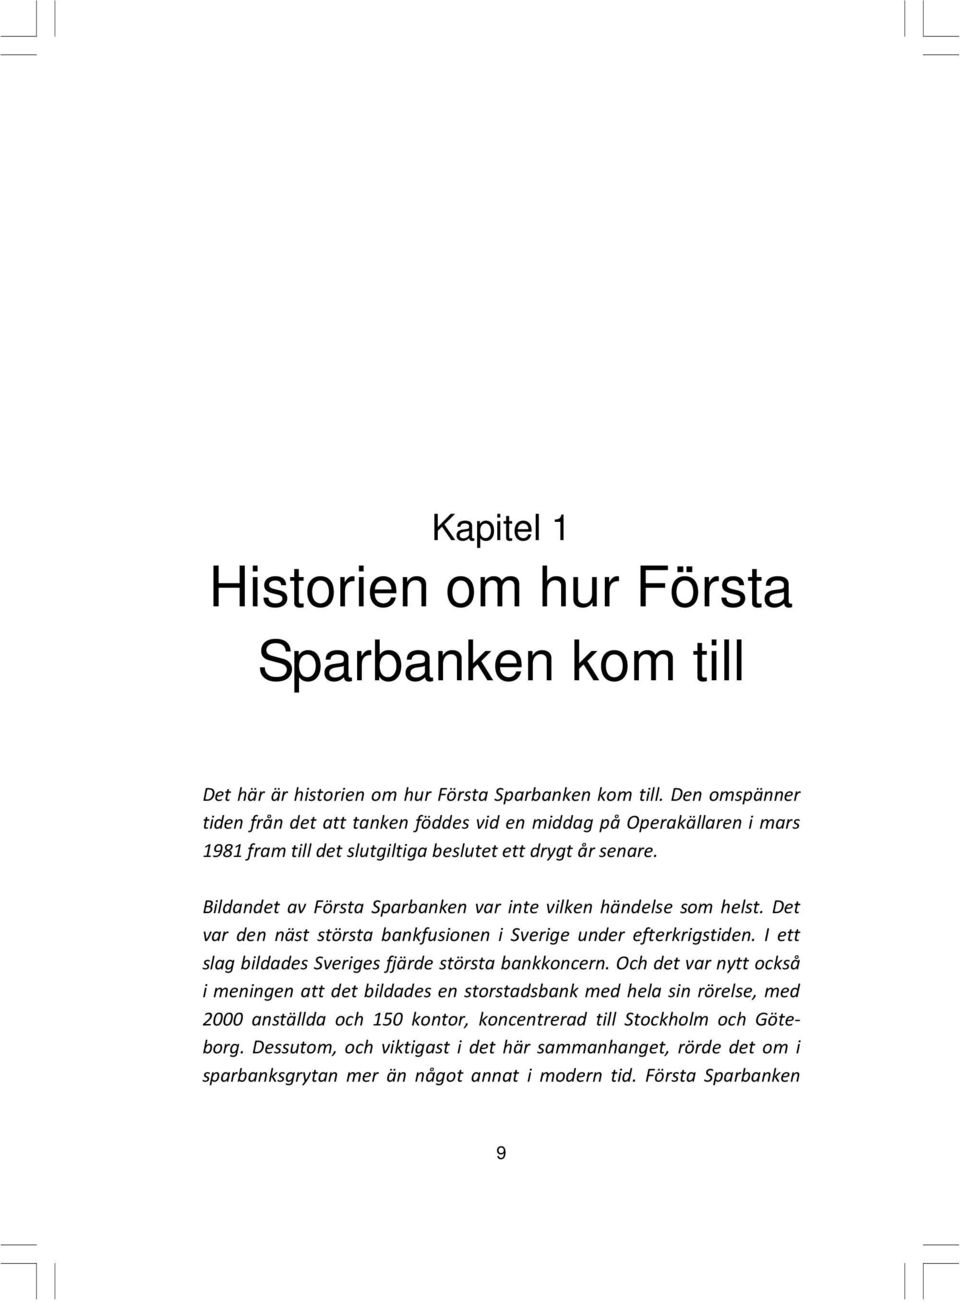 Bildandet av Första Sparbanken var inte vilken händelse som helst. Det var den näst största bankfusionen i Sverige under efterkrigstiden.